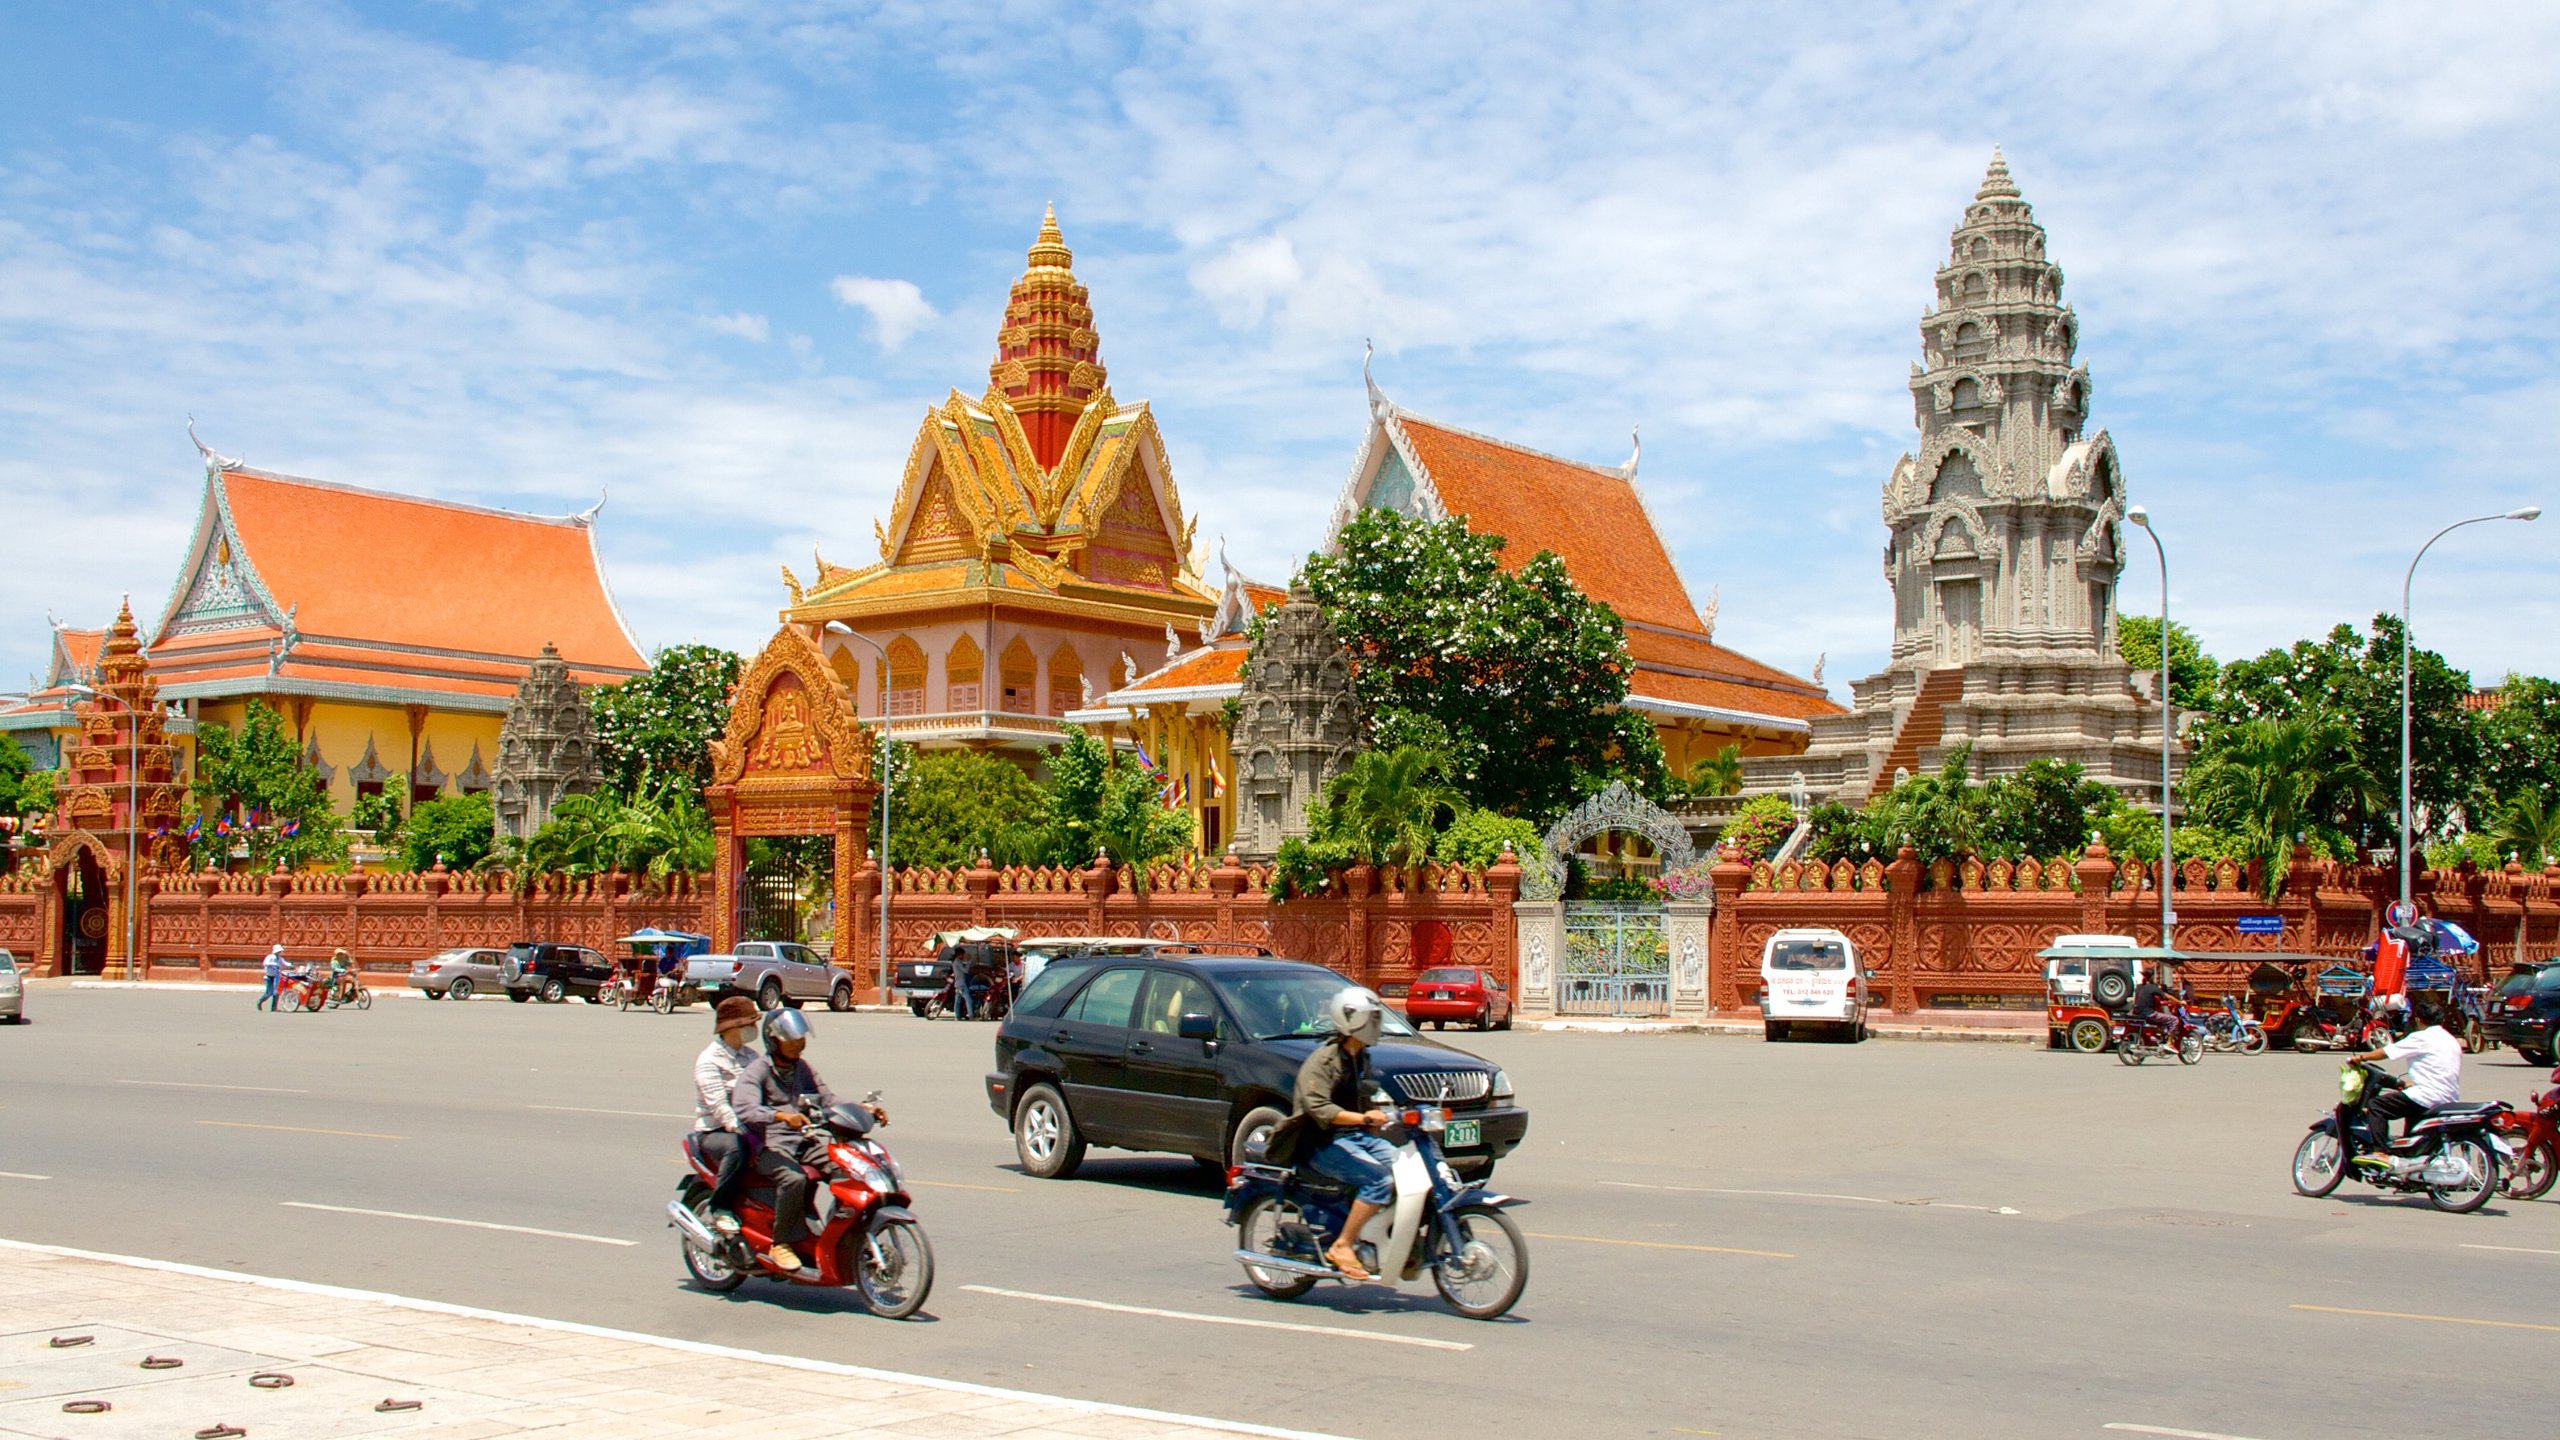 Пномпень. Камбоджа Пномпень. Ват Пном Пномпень. Пномпень национальный музей. Ангкор Пномпень.